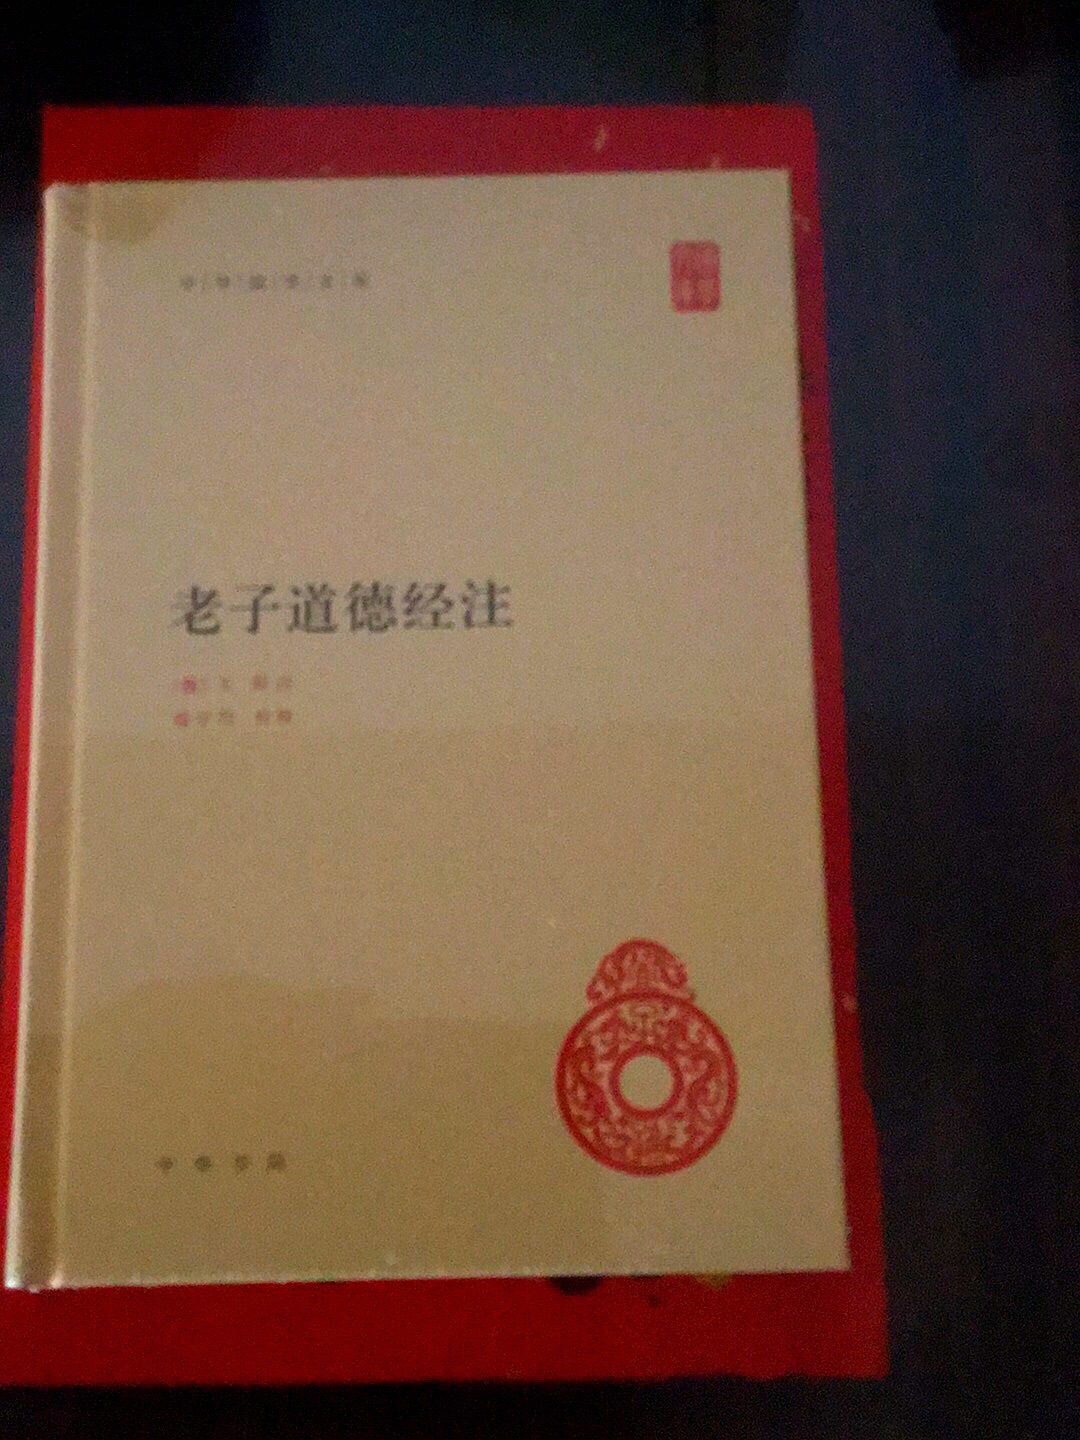 这本书是中华书局出版的，优惠活动时抢到的，非常好?